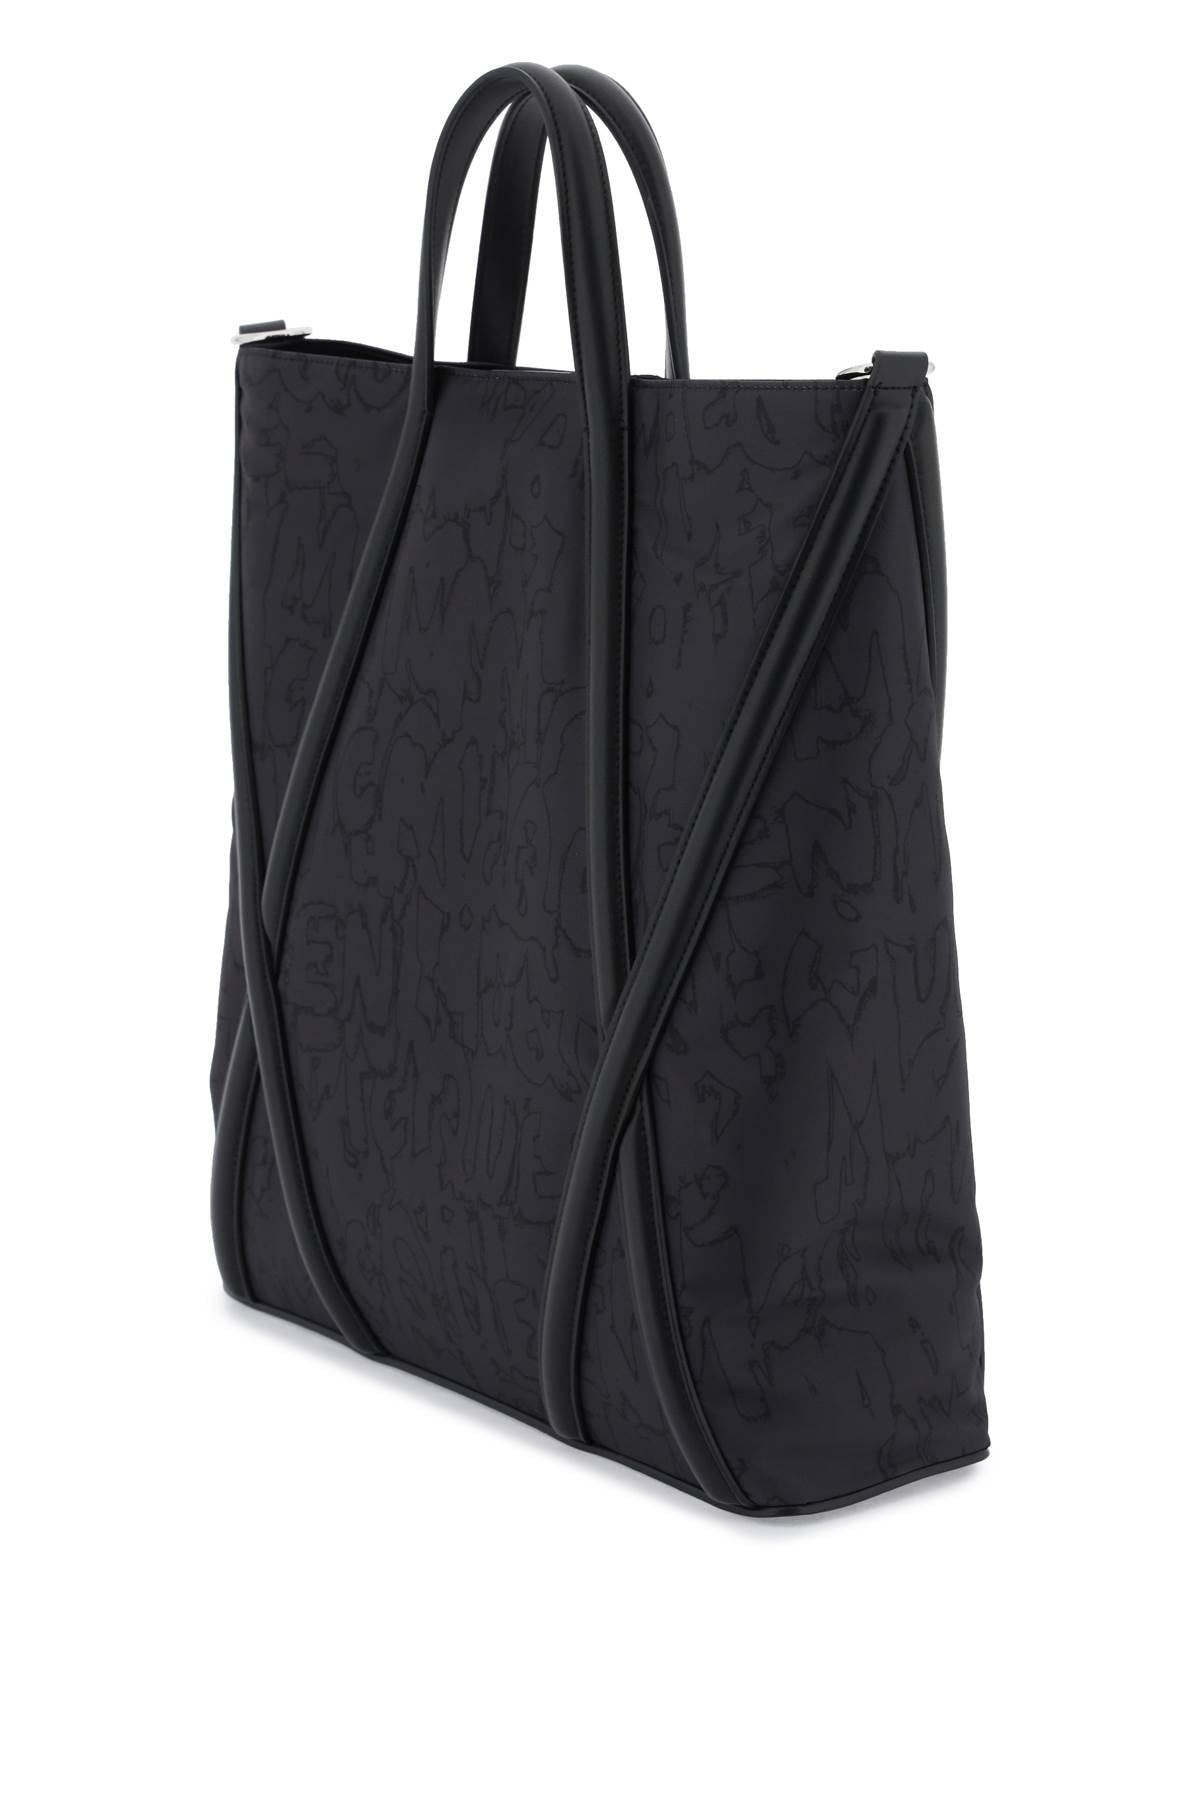 حقيبة تسوق ذات حمالات سوداء عصرية للرجال